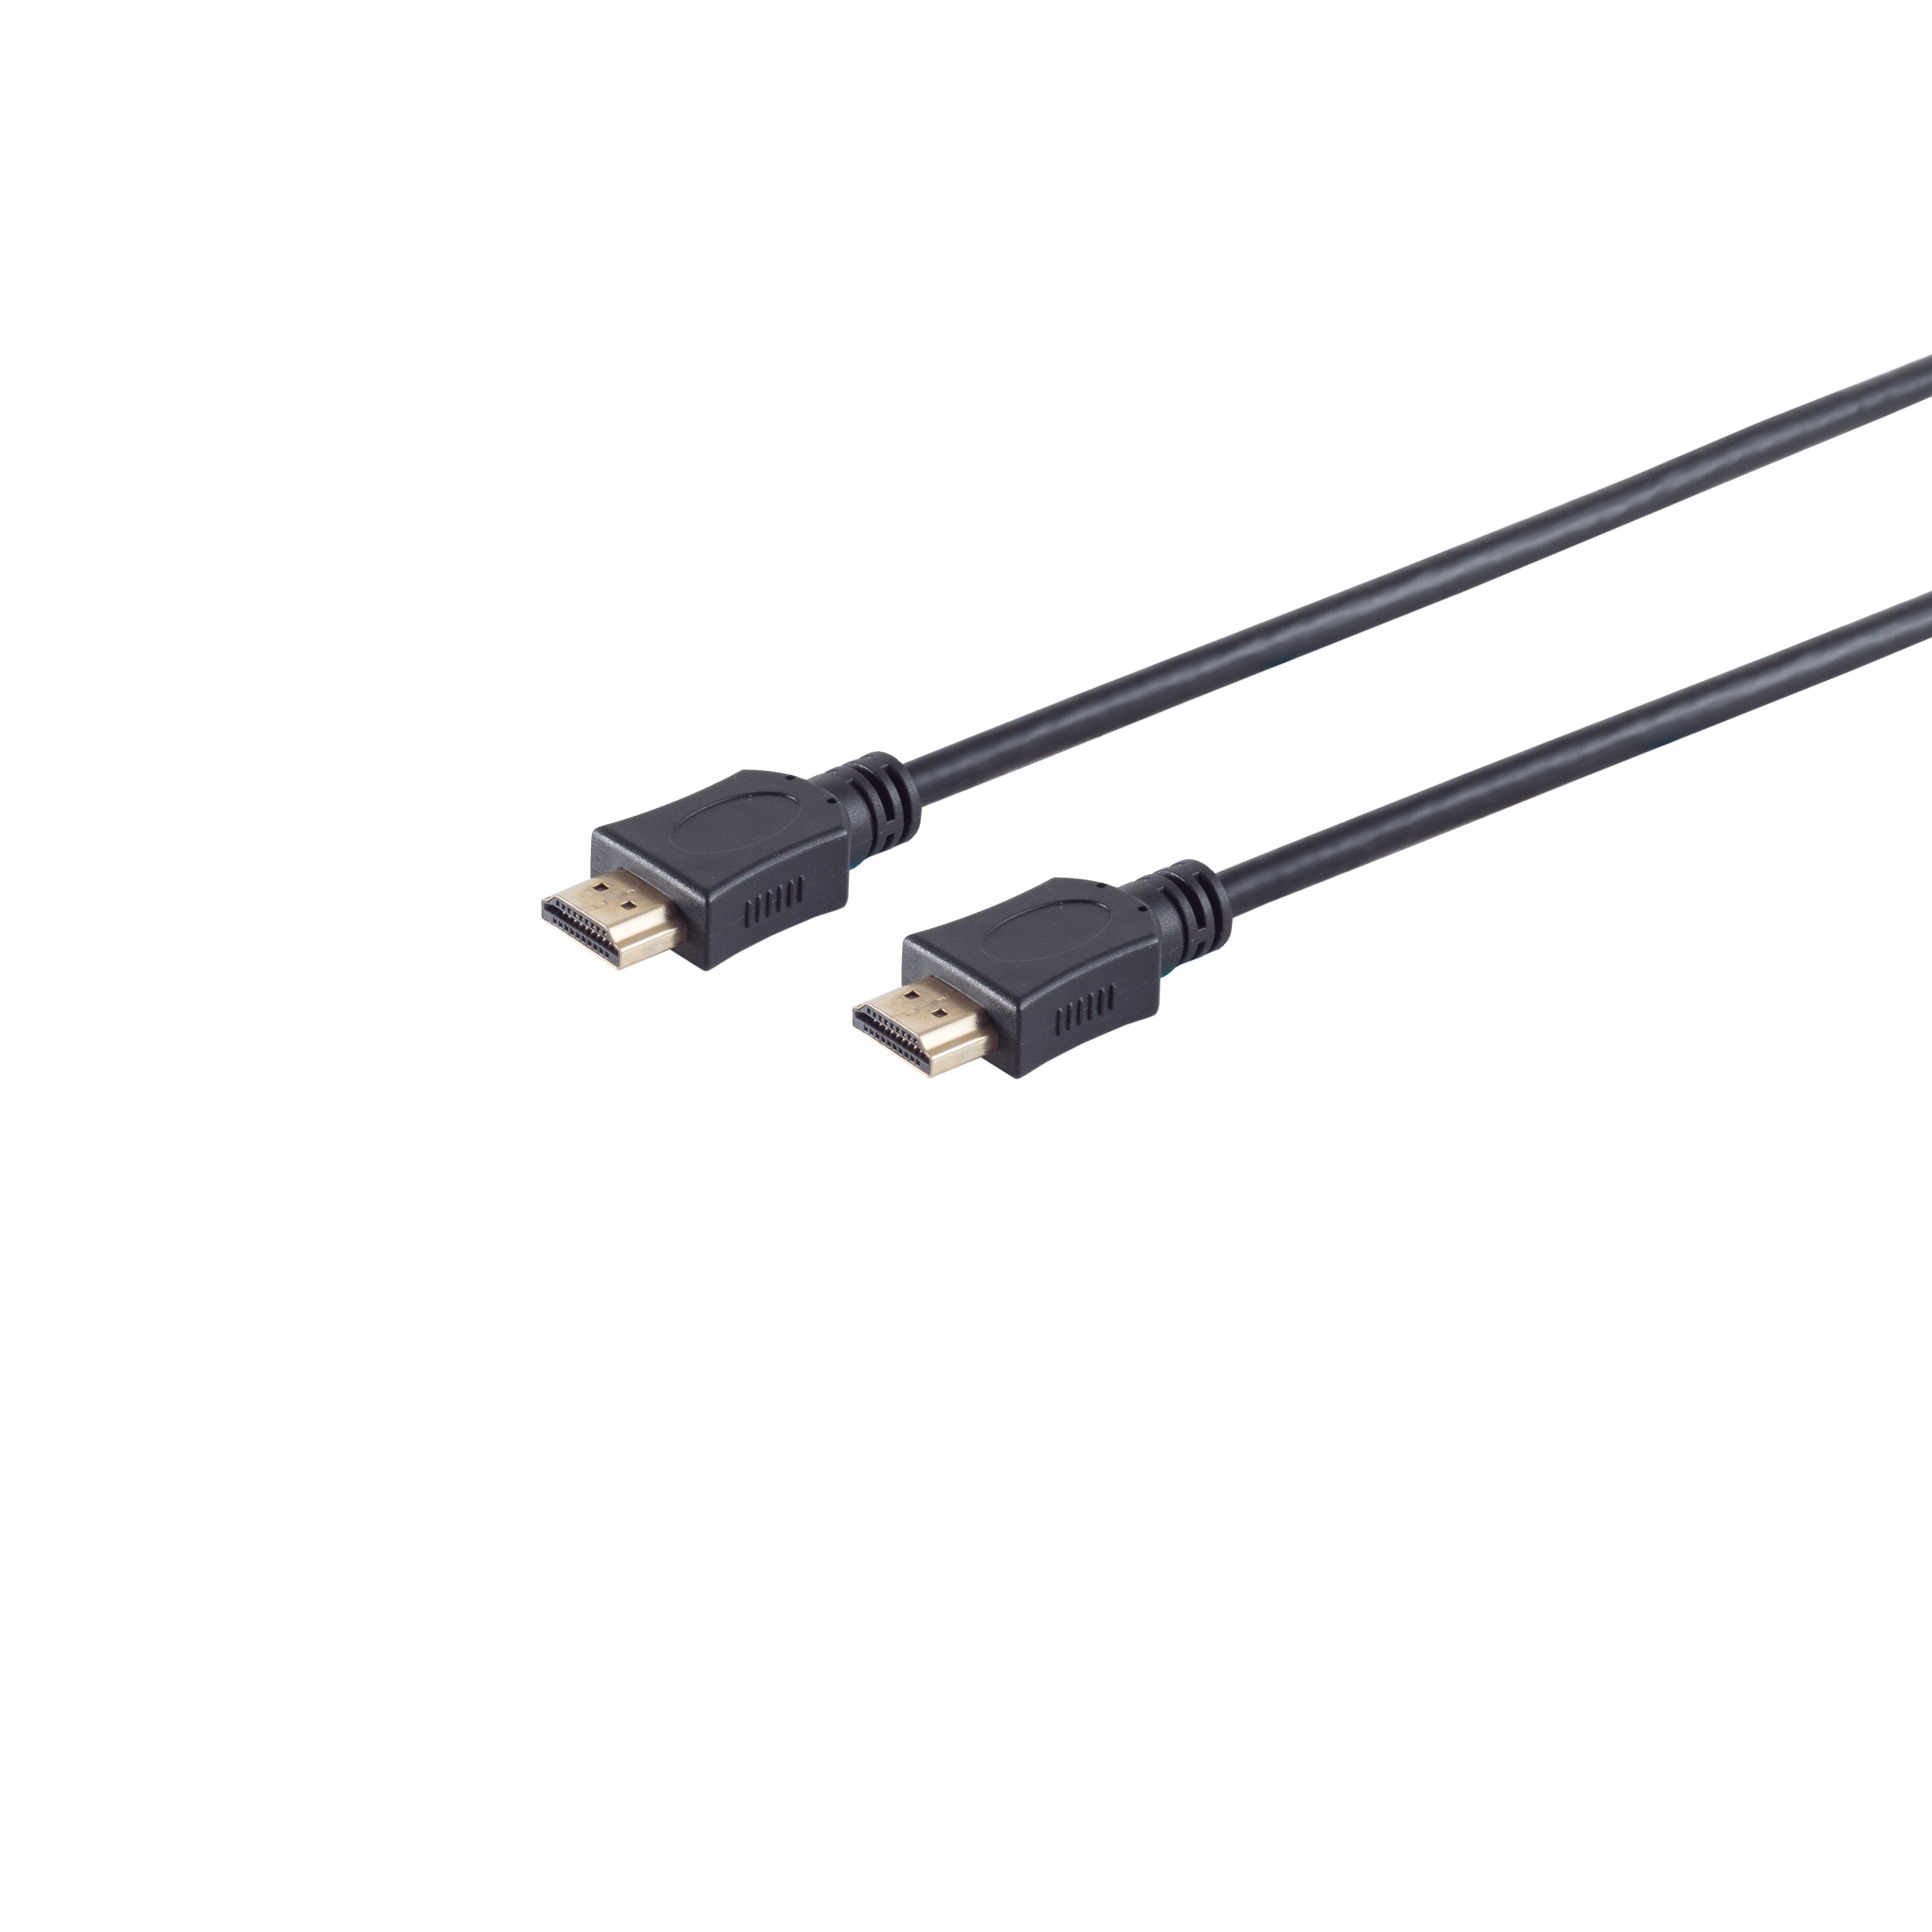 MAXIMUM verg. A-Stecker HEAC 10m HDMI / S/CONN A-Stecker Kabel HDMI HDMI CONNECTIVITY